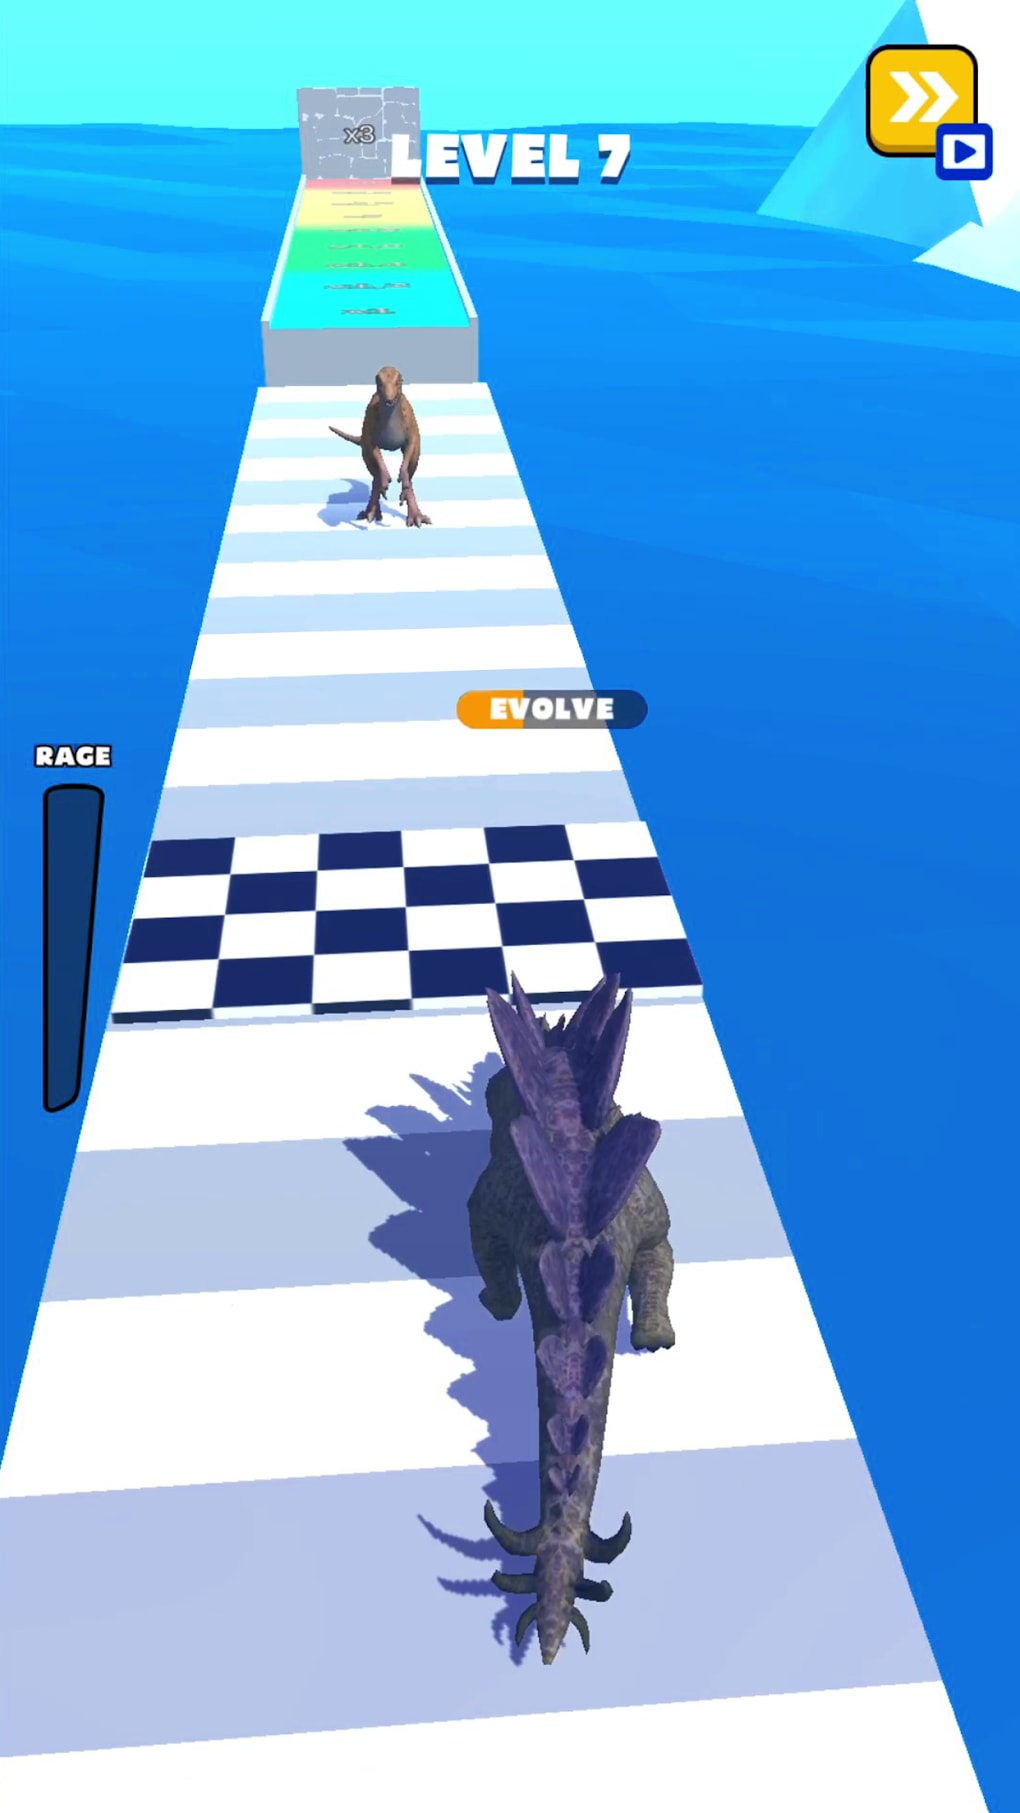 Dino Run 3D - Dinosaur Rush para Android - Download